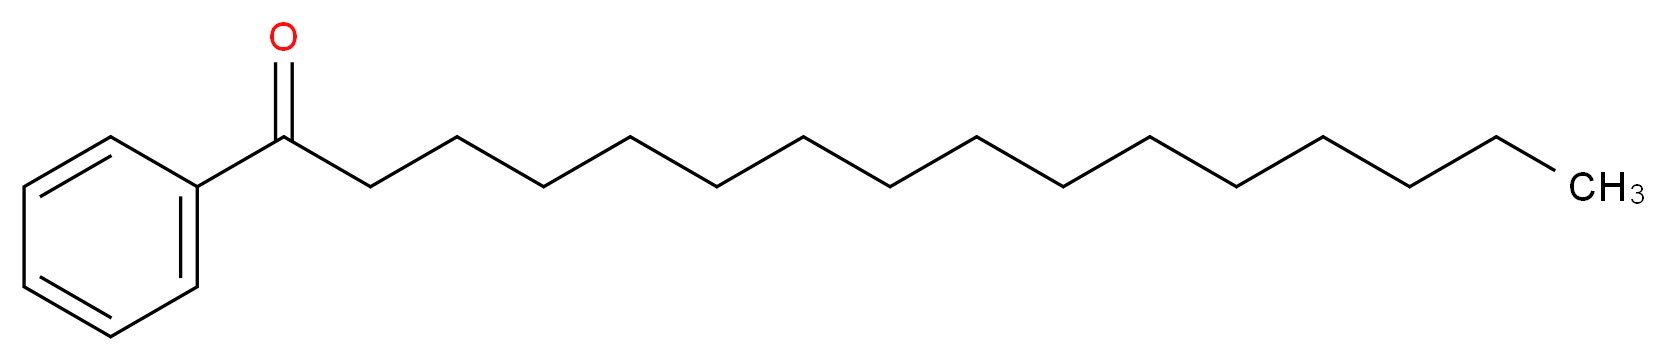 苯正十六酮_分子结构_CAS_6697-12-7)